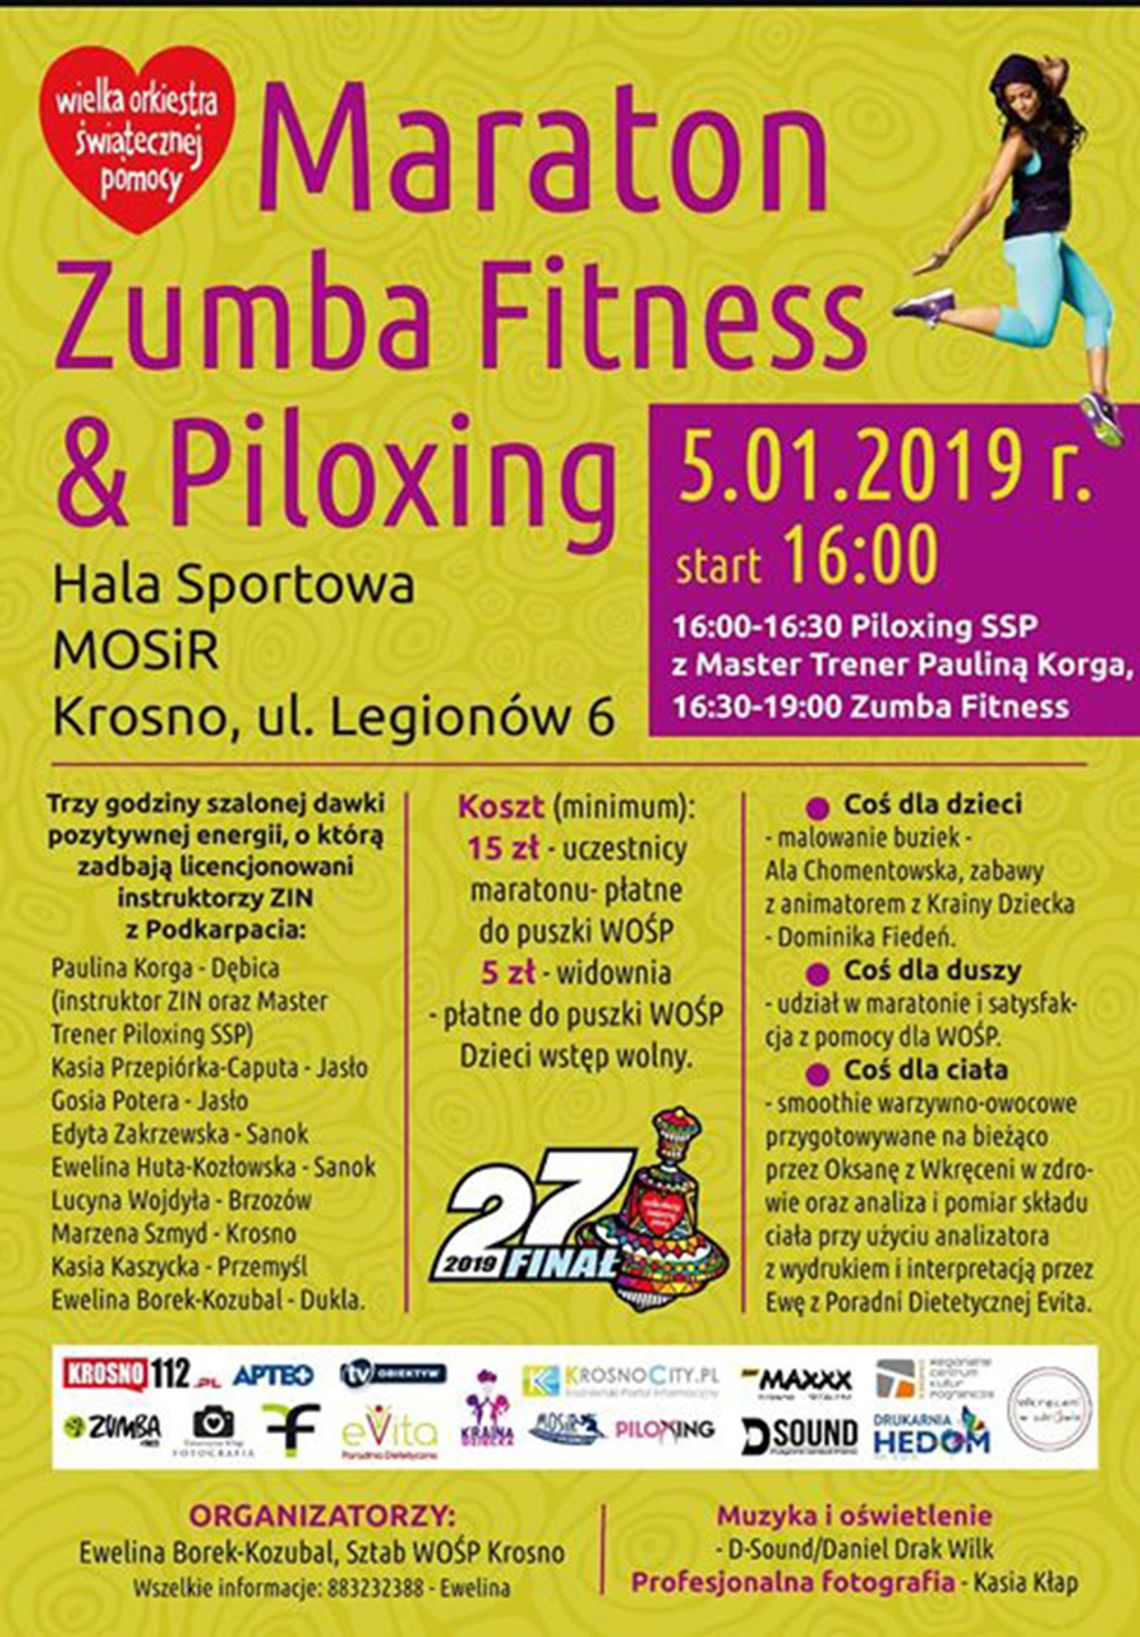 Maraton Zumba Fitness & Piloxing 